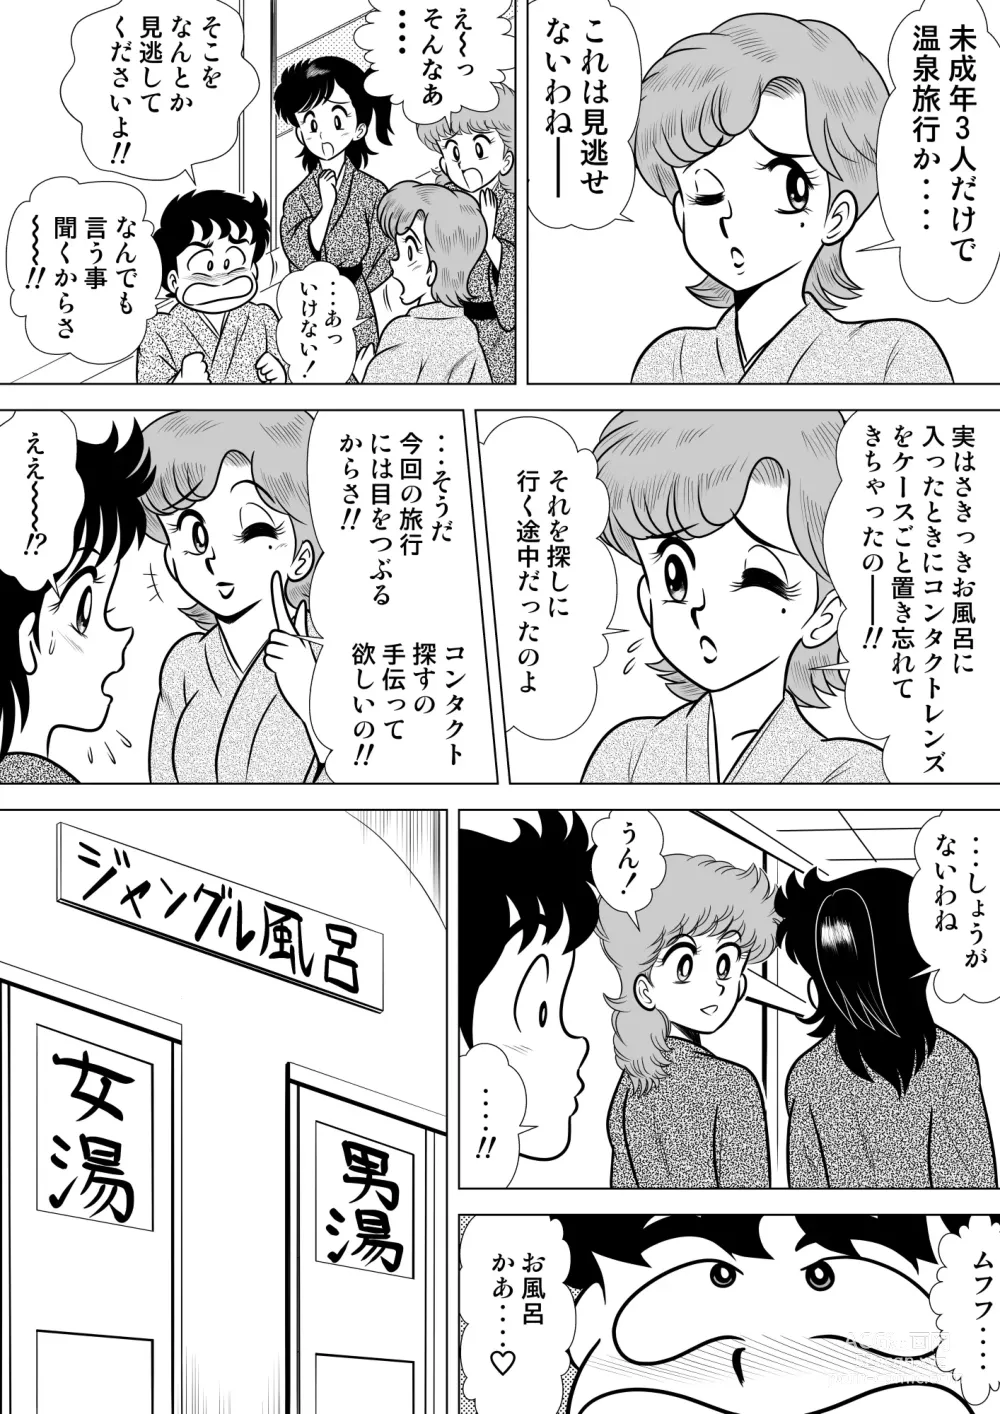 Page 3 of doujinshi Izumi-chan Binkan Heart 4